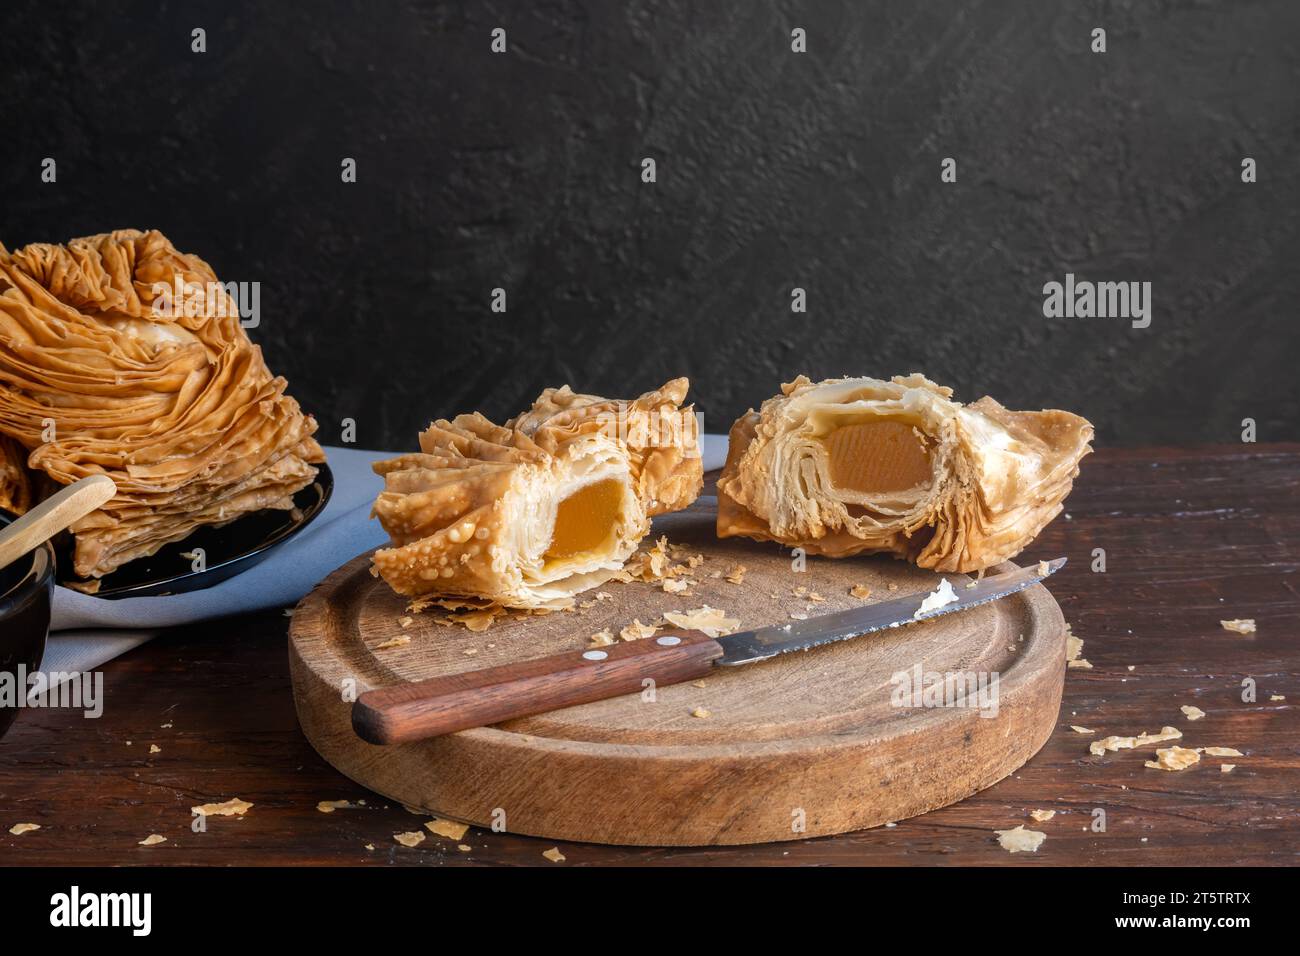 Dolce argentino chiamato pastelito, è tagliato a metà e si può vedere il ripieno di patate dolci. Foto Stock